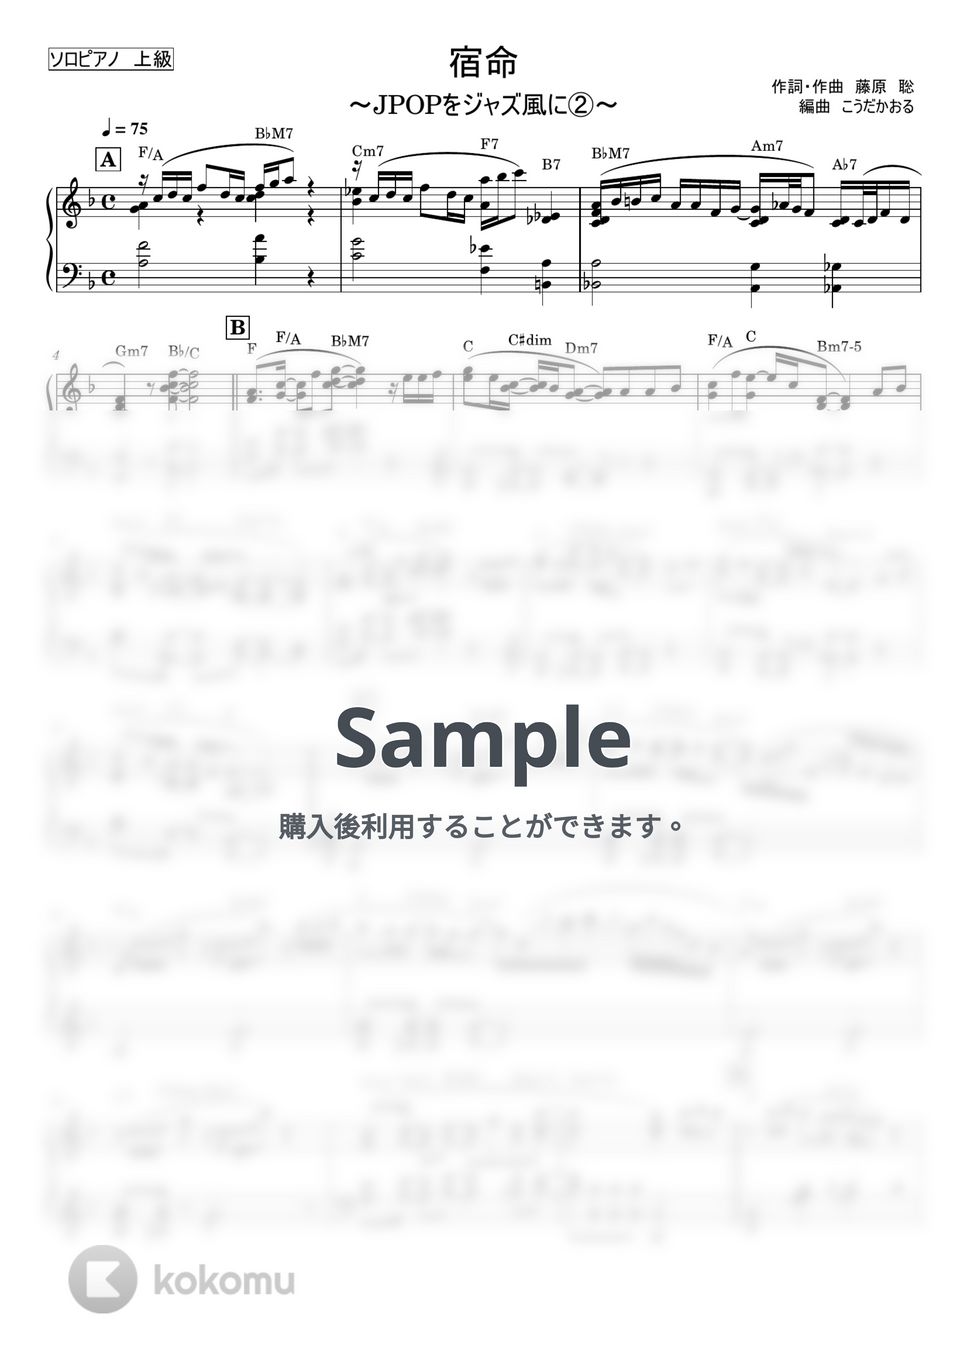 Official髭男dism - 宿命～JPOPをジャズ風に/上級 (ピアノソロ/ジャズ風) by こうだかおる